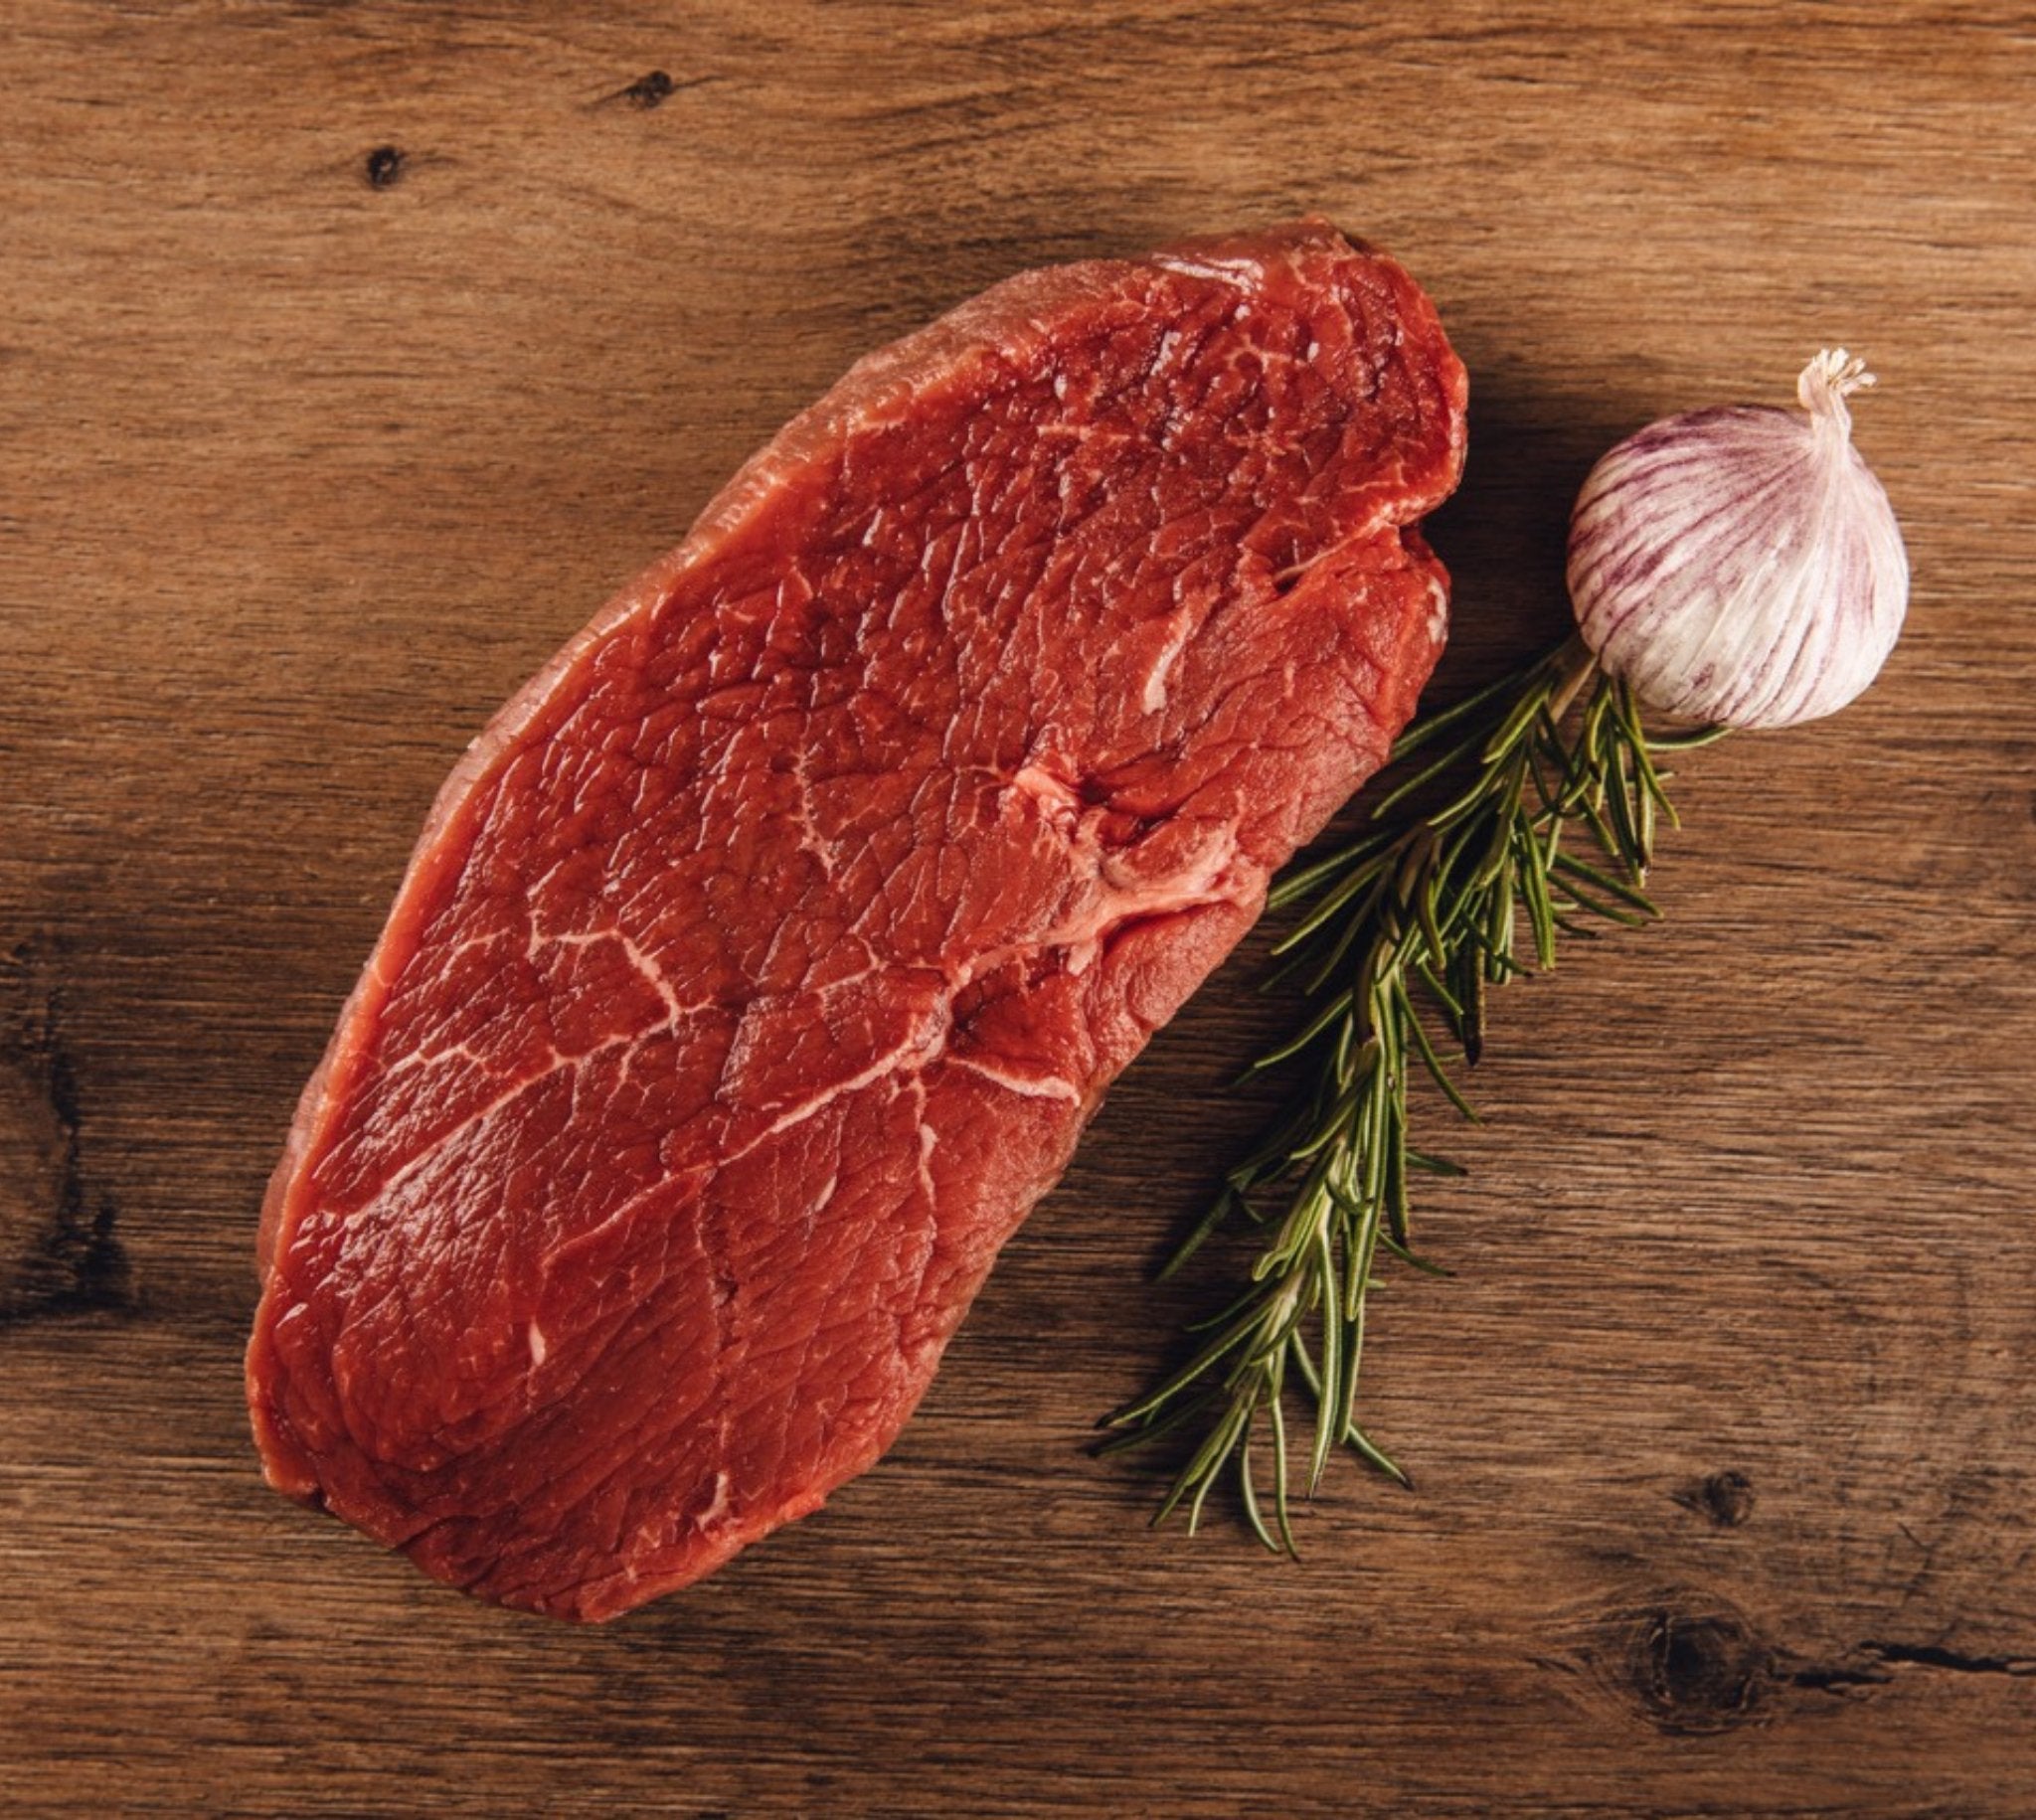 Steakhüfte Bodensee Färse - Premium Fleisch | BüffelBill Shop Genießen Sie feinstes Hüftensteak von der Bodensee Färse, erhältlich bei BüffelBill. Lecker, mager und intensiv im Geschmack. Optimal für Steak-Liebhaber.